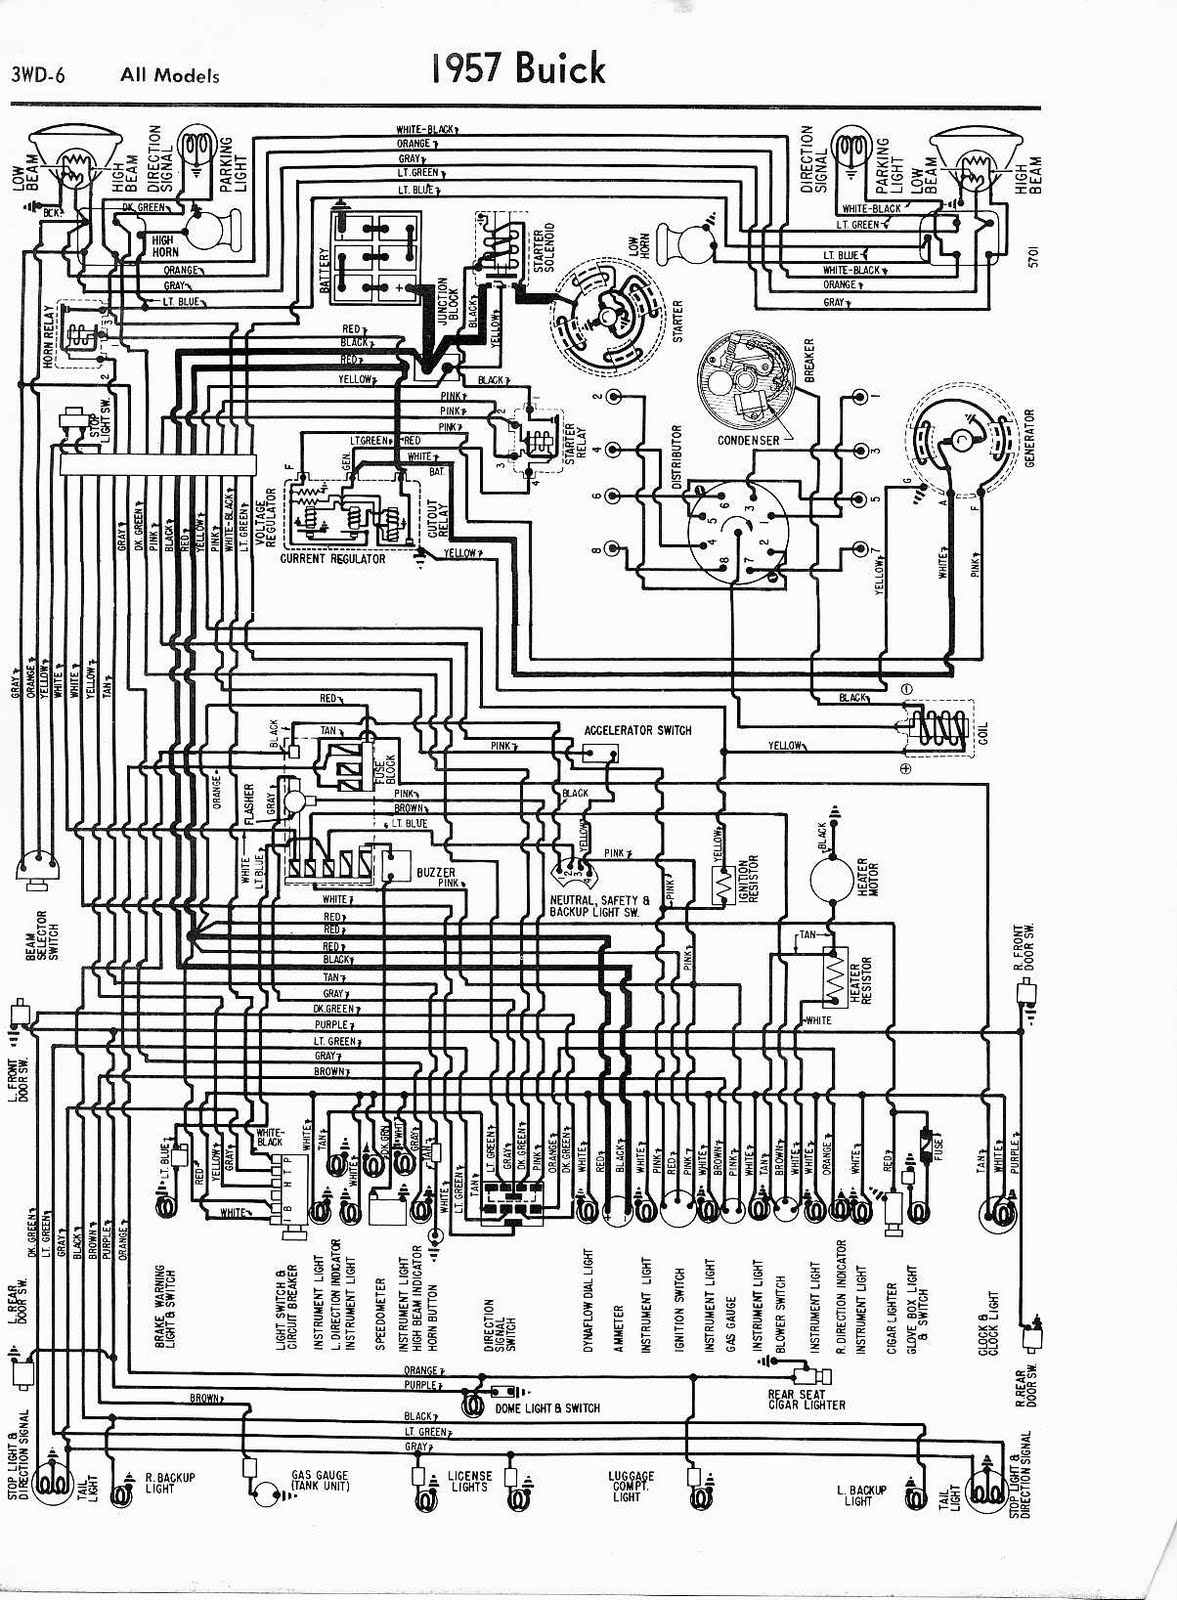 Free Car Wiring Diagrams 64